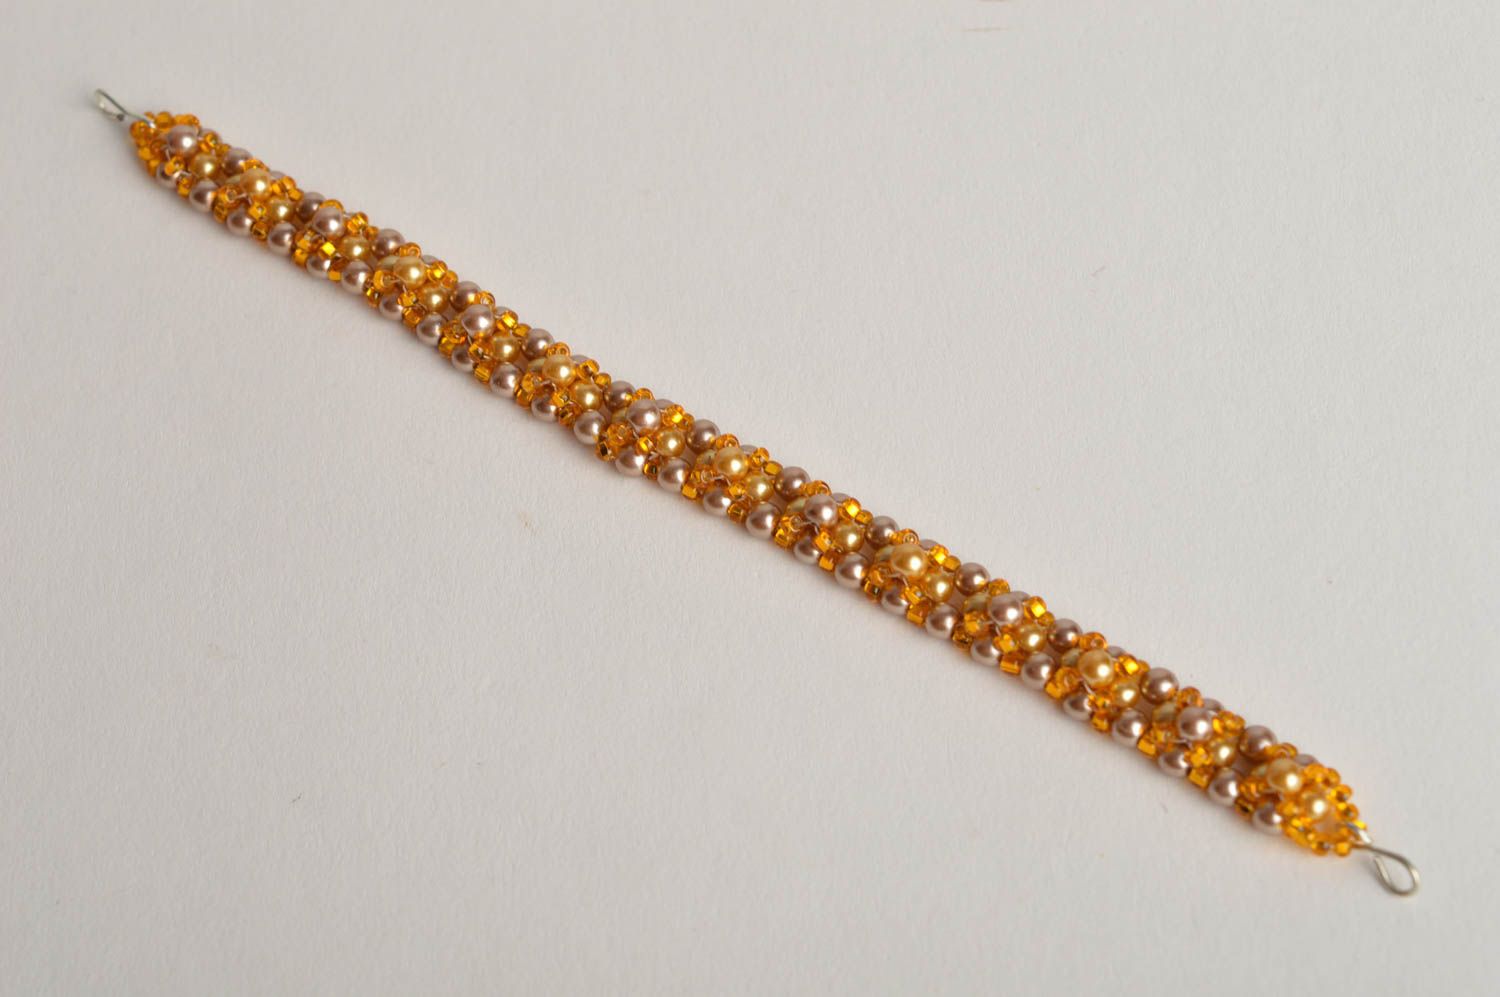 Golden beads cord bracelet wrist all-size bracelet for girls photo 2